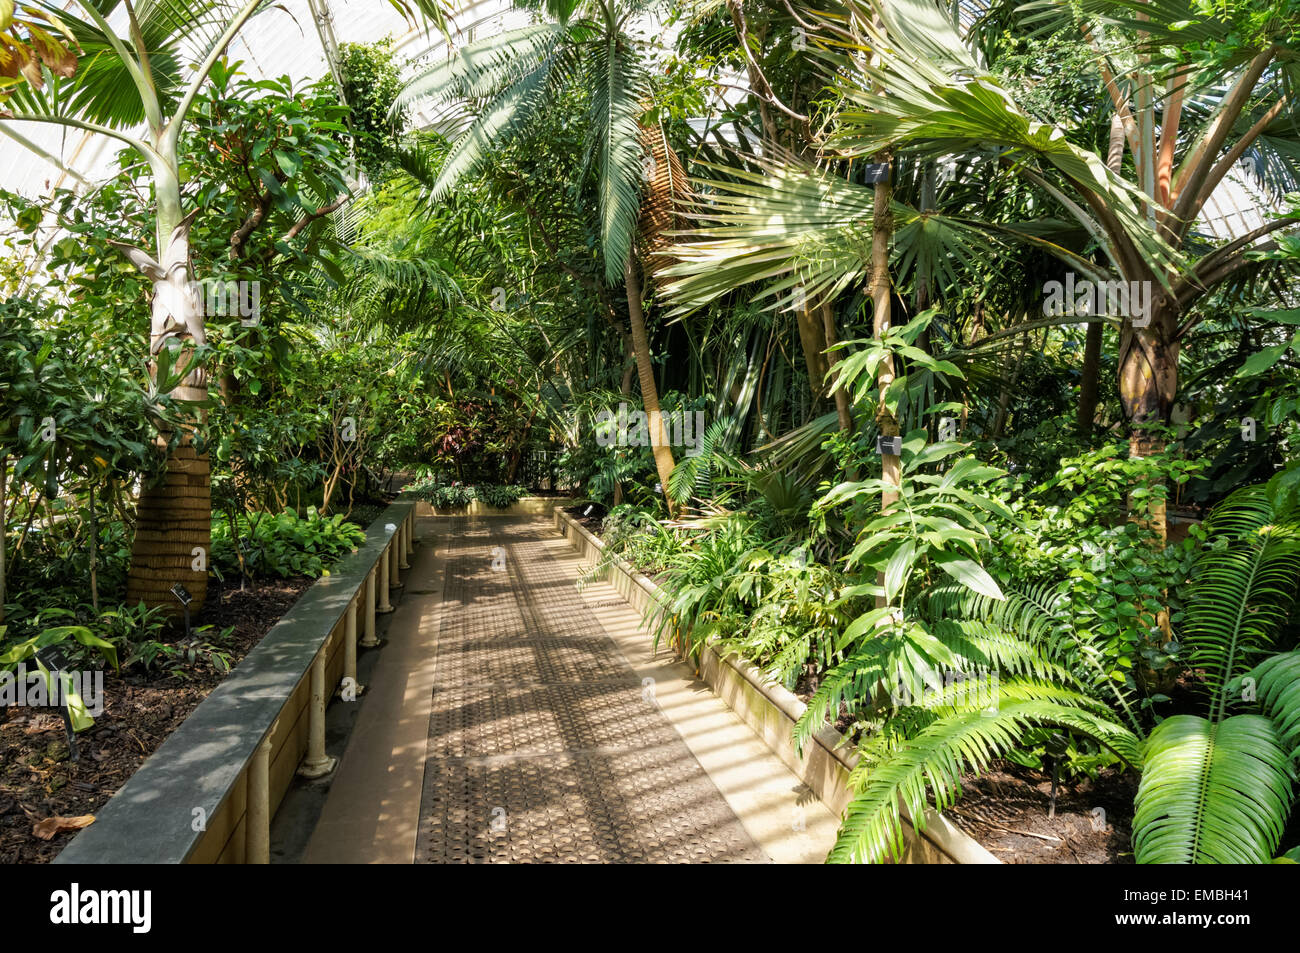 Innenausstattung des Palm House in The Kew Gardens, London England Großbritannien Stockfoto